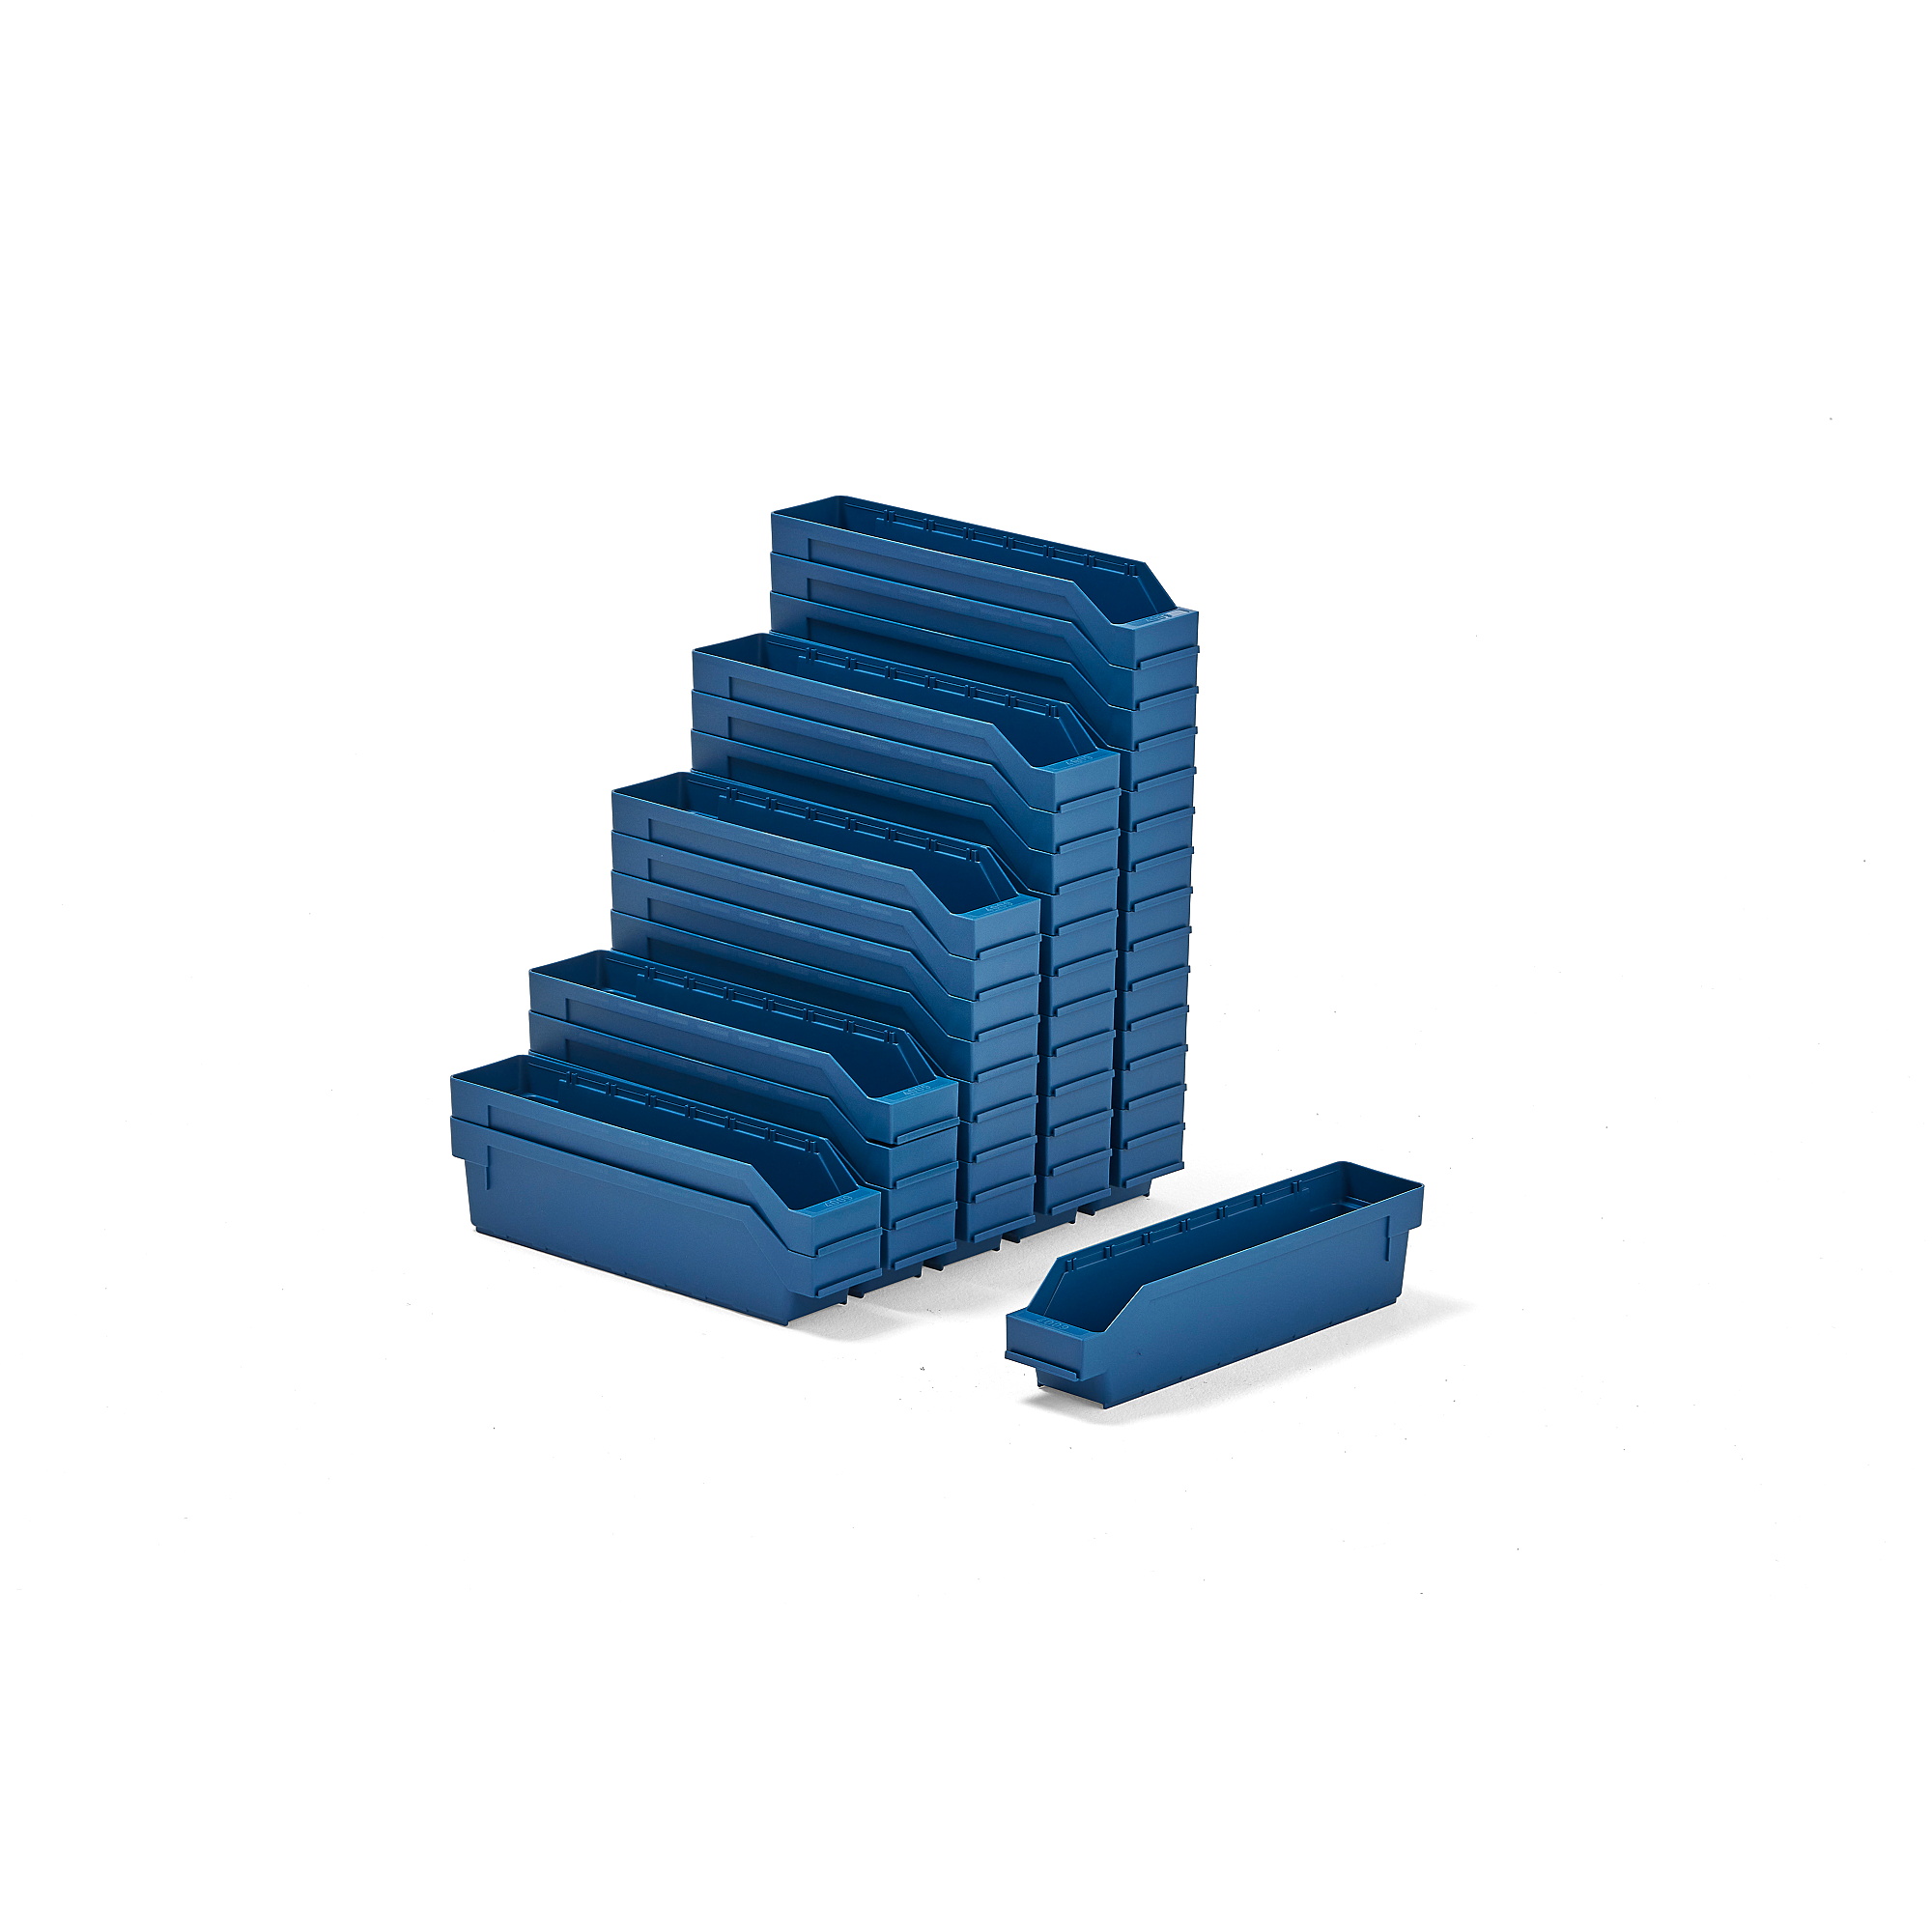 Plastové boxy na súčiastky REACH, 400x90x95 mm, 40 ks, modré